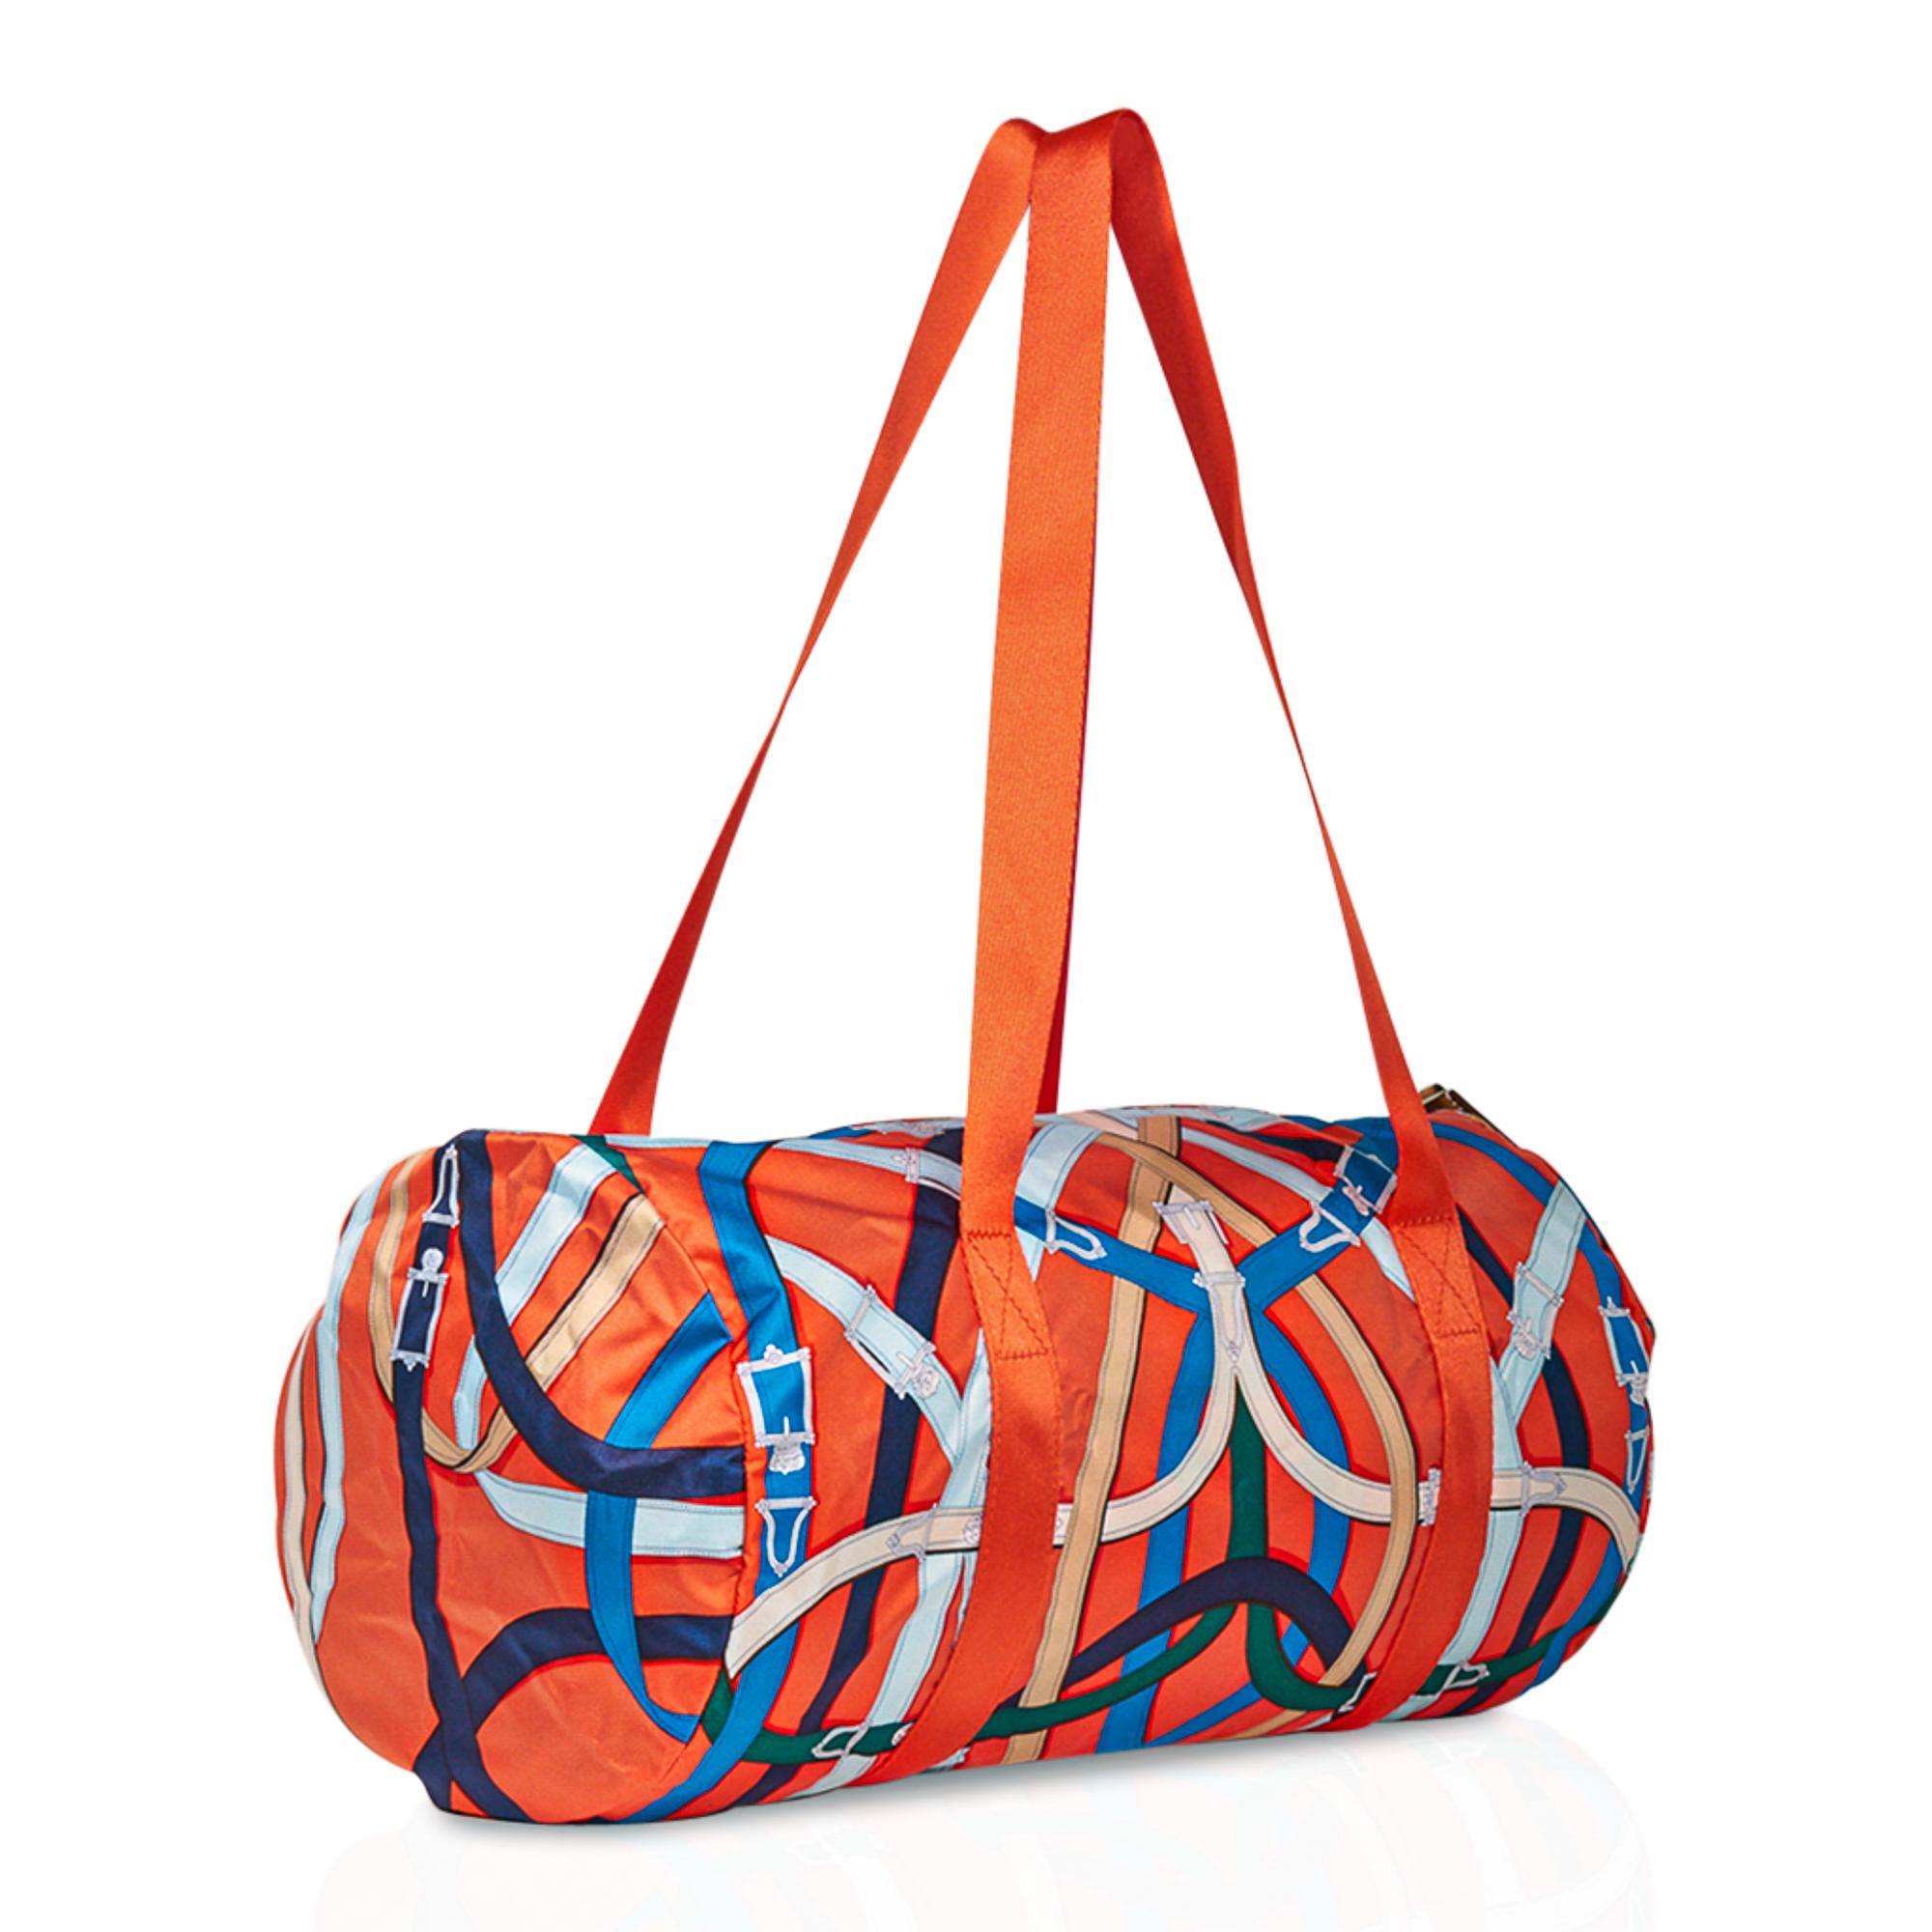 Garantie de l'authenticité de l'édition limitée du Airsilk Duffle Cavalcadour 38 d'Hermès en bleu orange, blanc, vert et noir.
Le sac de même taille est également disponible en couleur bleue.
Magnifique imprimé pour foulard en soie Cavalcadour conçu